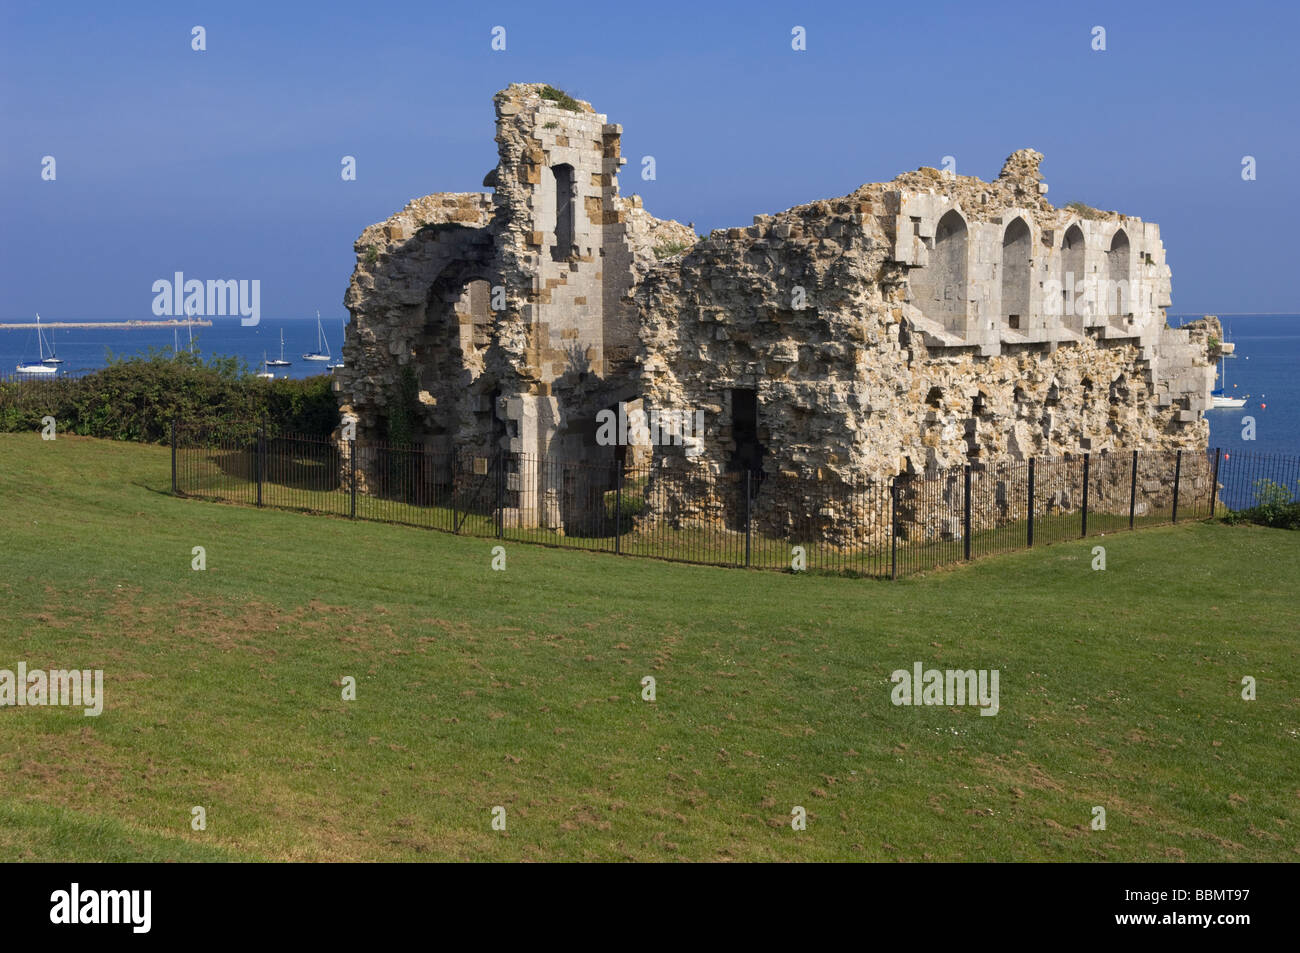 The ruins of Sandsfoot Castle overlooking Portland Harbour in Dorset, England. Stock Photo